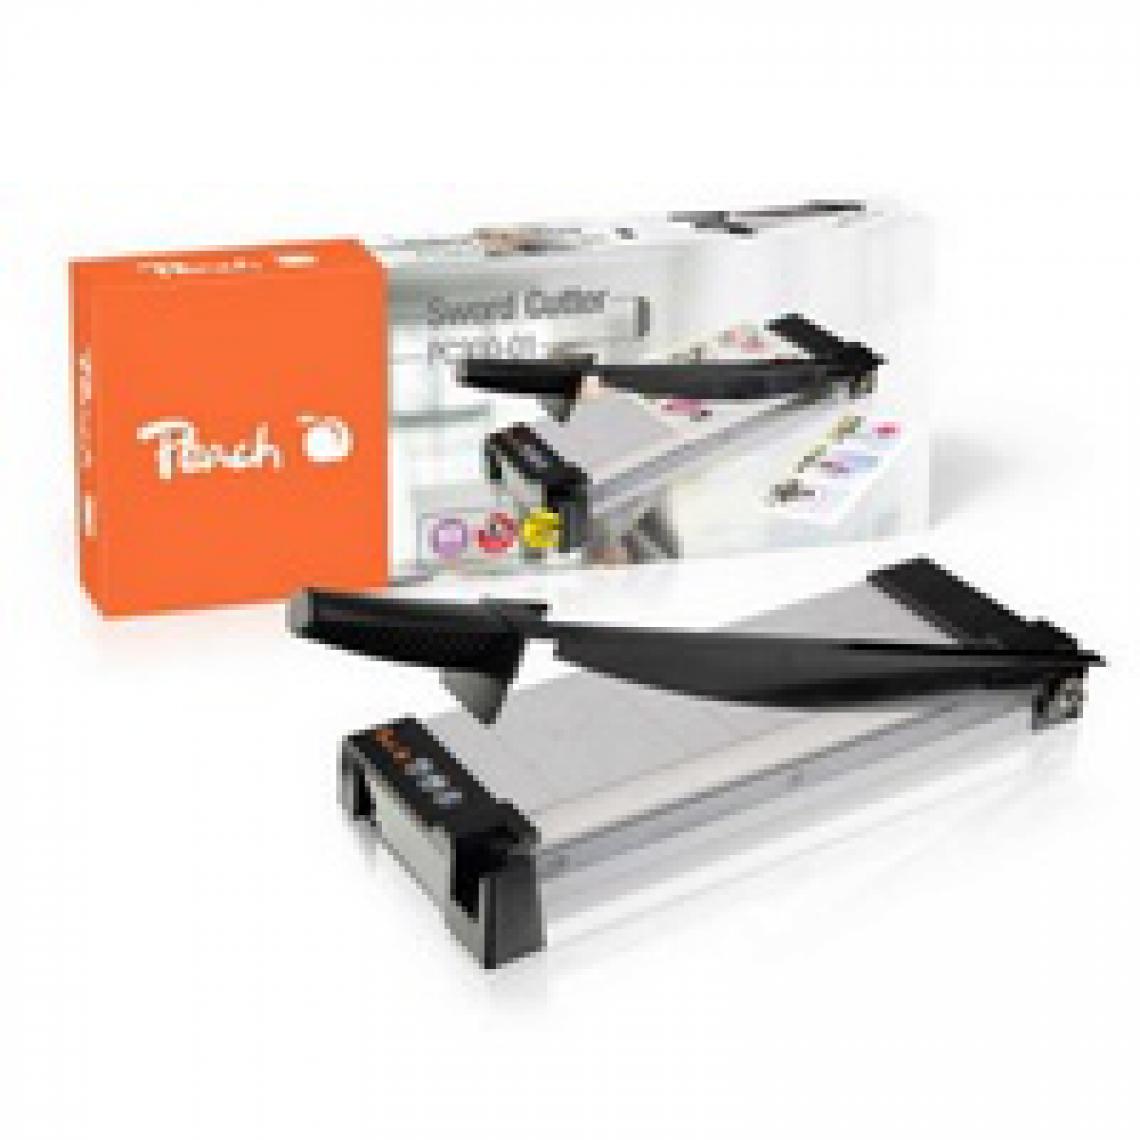 Peach - Cisaille Peach PC300-01 Sword Cutter A4 - Accessoires Bureau